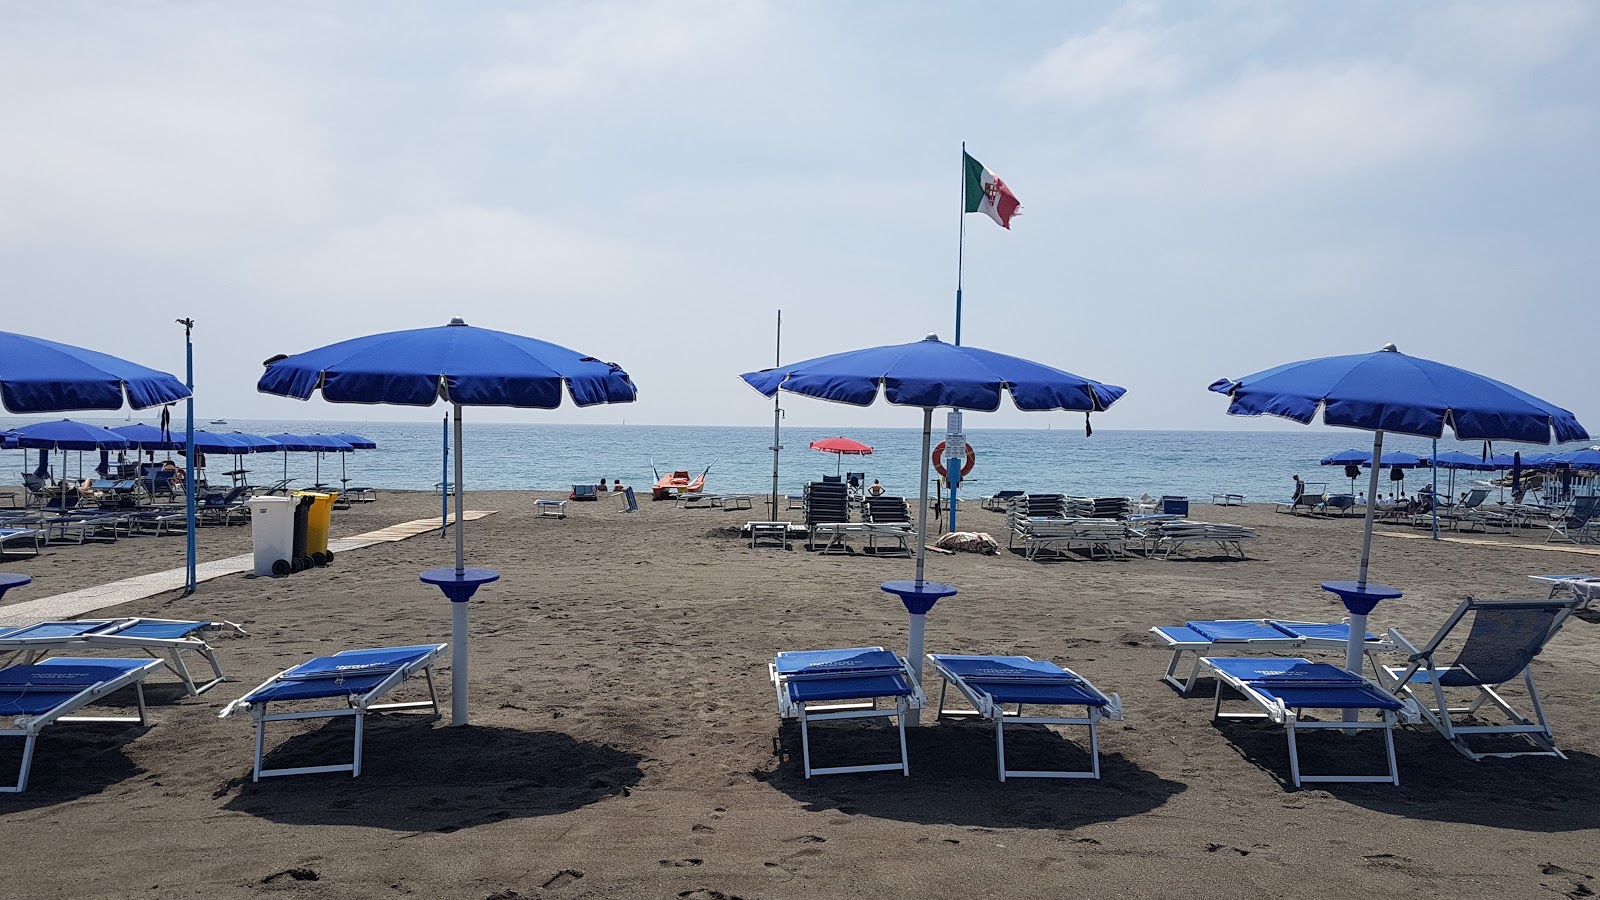 Spiaggia Tito Groppo的照片 海滩度假区